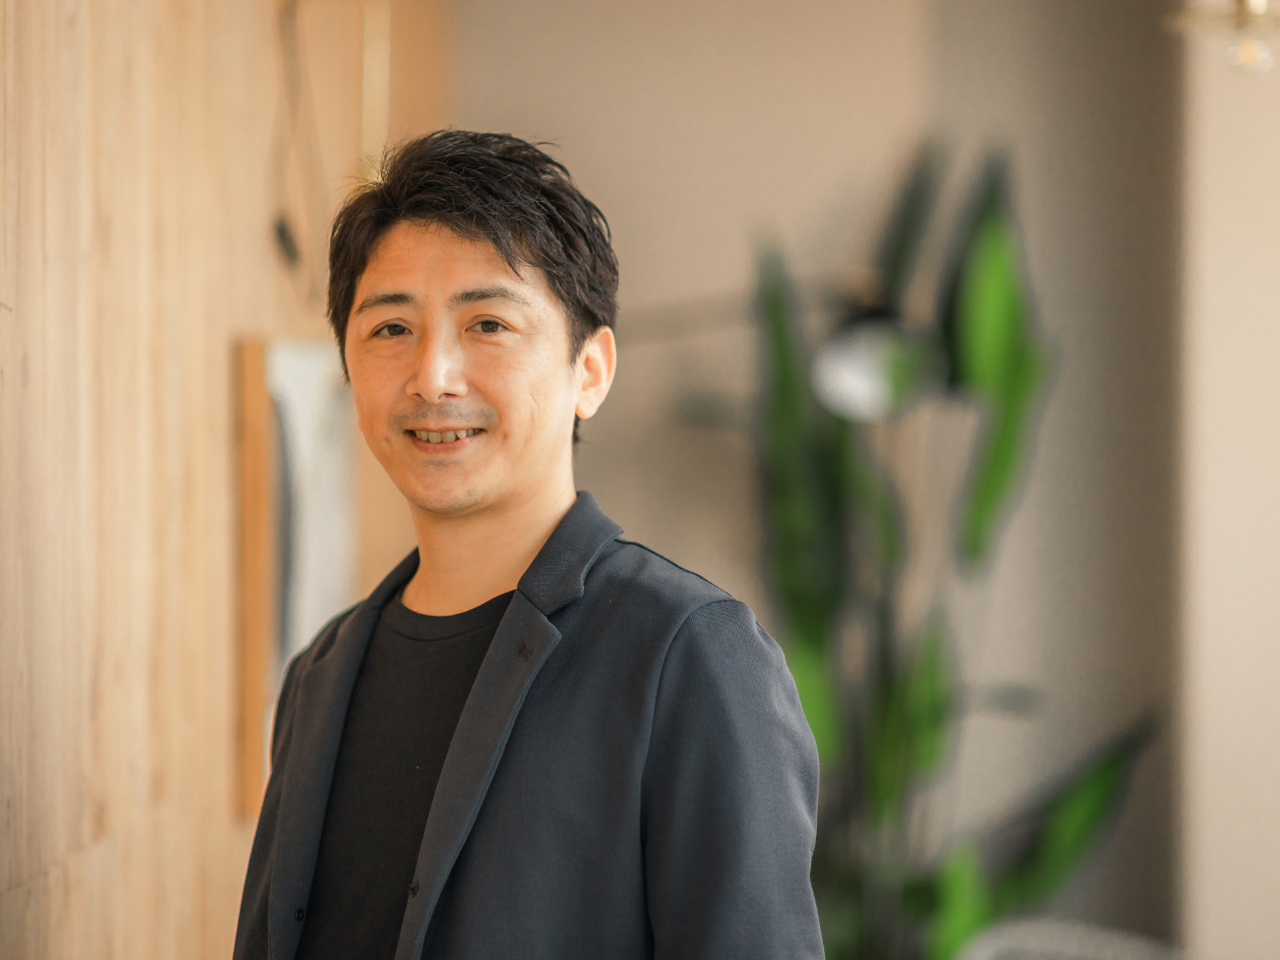 代表の石井氏は、2000年にネットベンチャーに創業メンバーとして参画して以来、副社長などを歴任し、一部上場まで導いた経歴の持ち主だ。